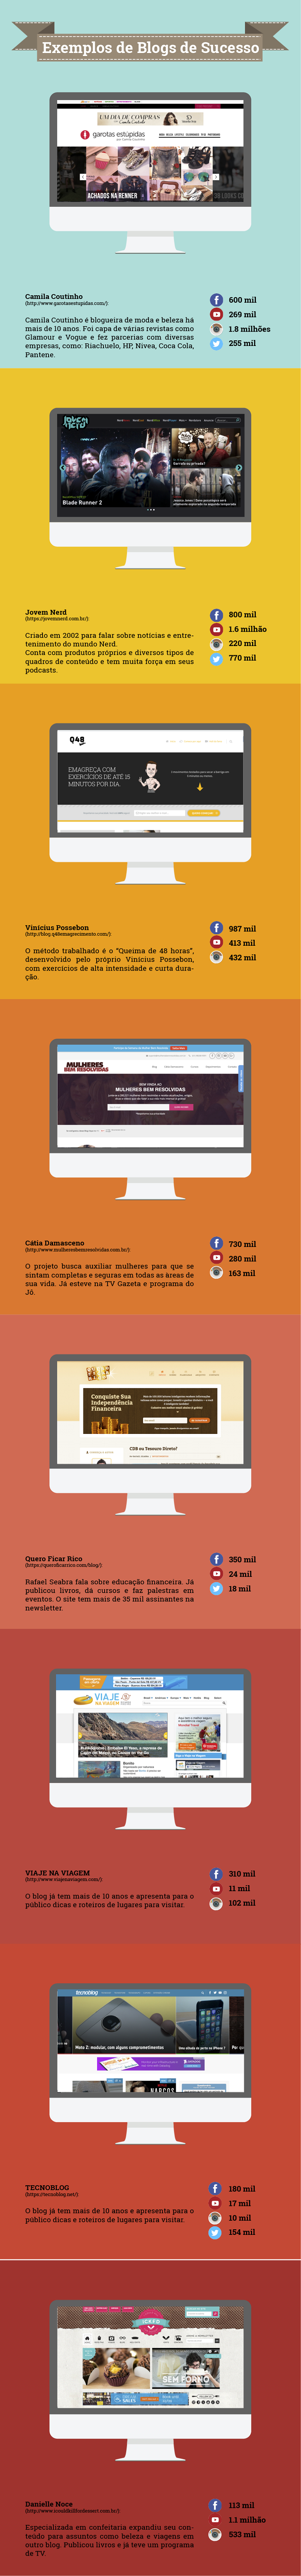 infografico-blogueiros-parte7